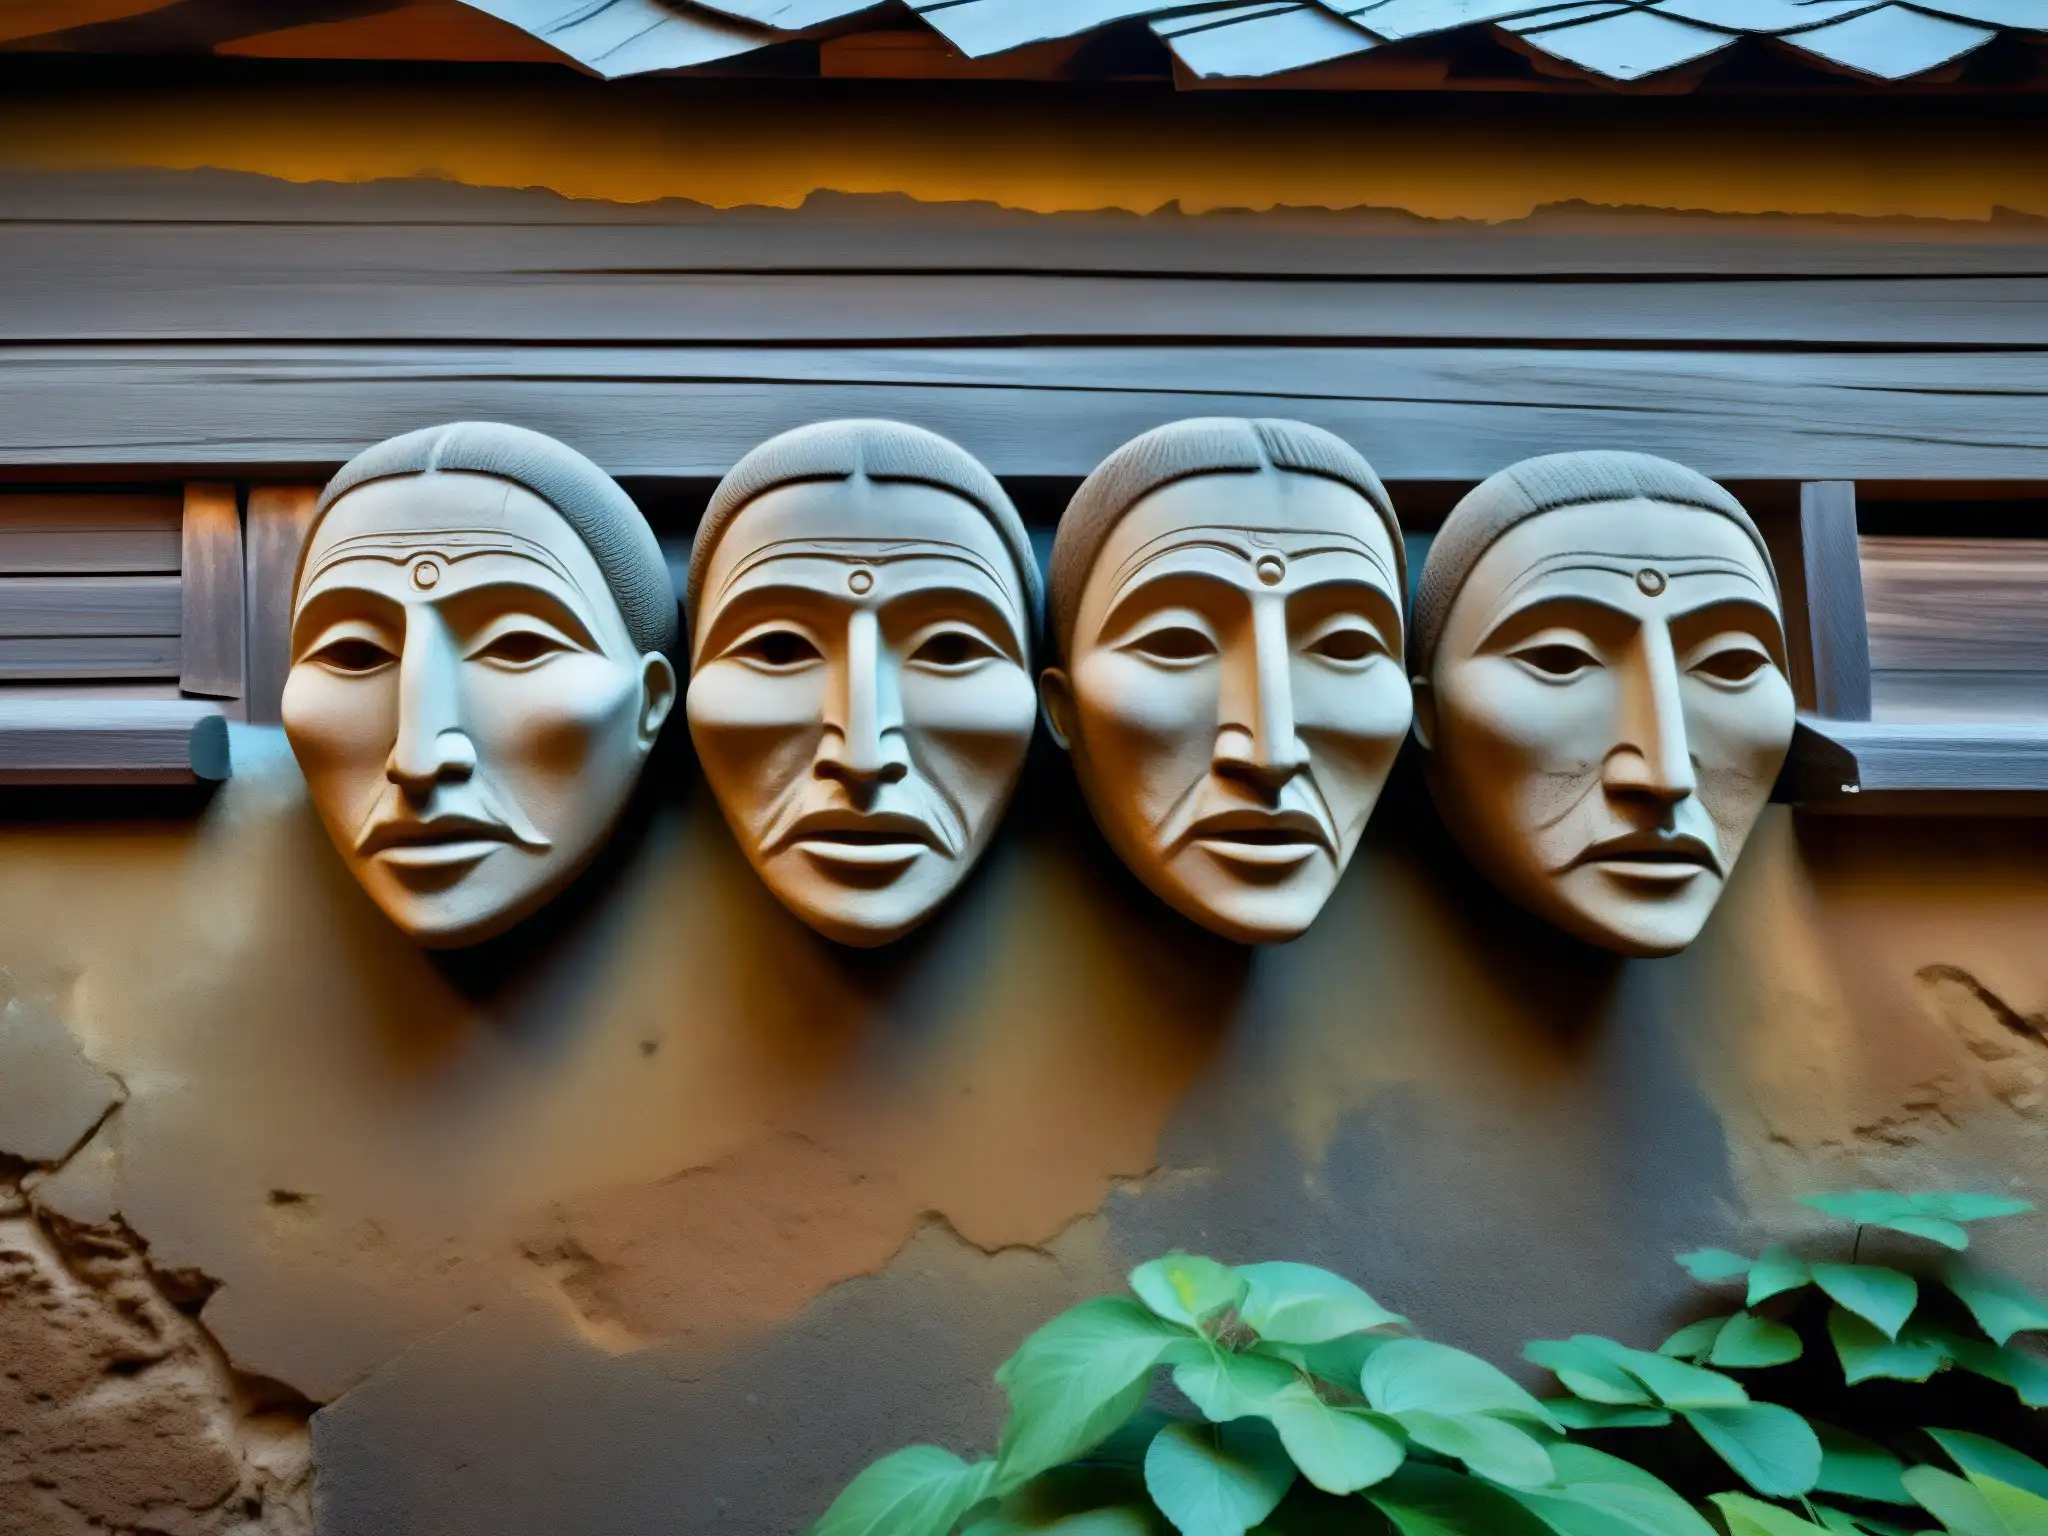 Detallada imagen de las enigmáticas caras de Bélmez en una pared, mostrando texturas y misterio